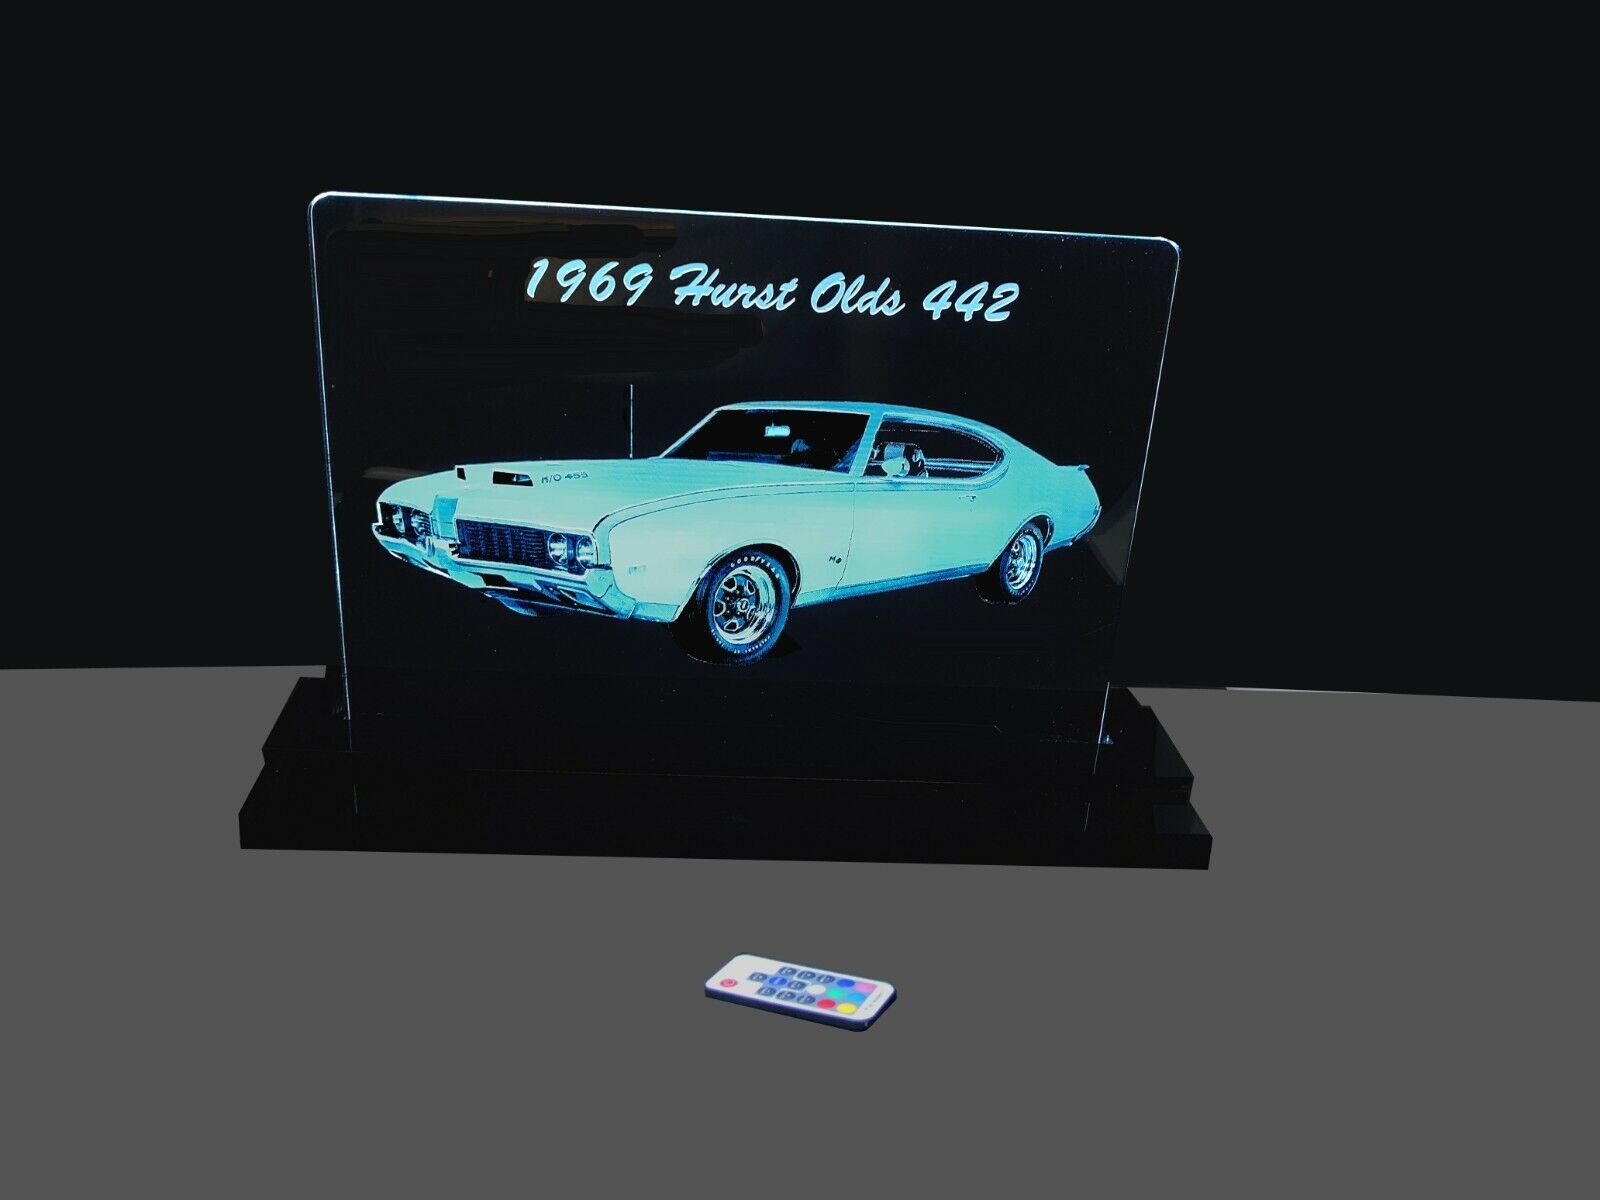 1969 Hurst Oldsmobile Laser Etched LED Edge Lit Sign